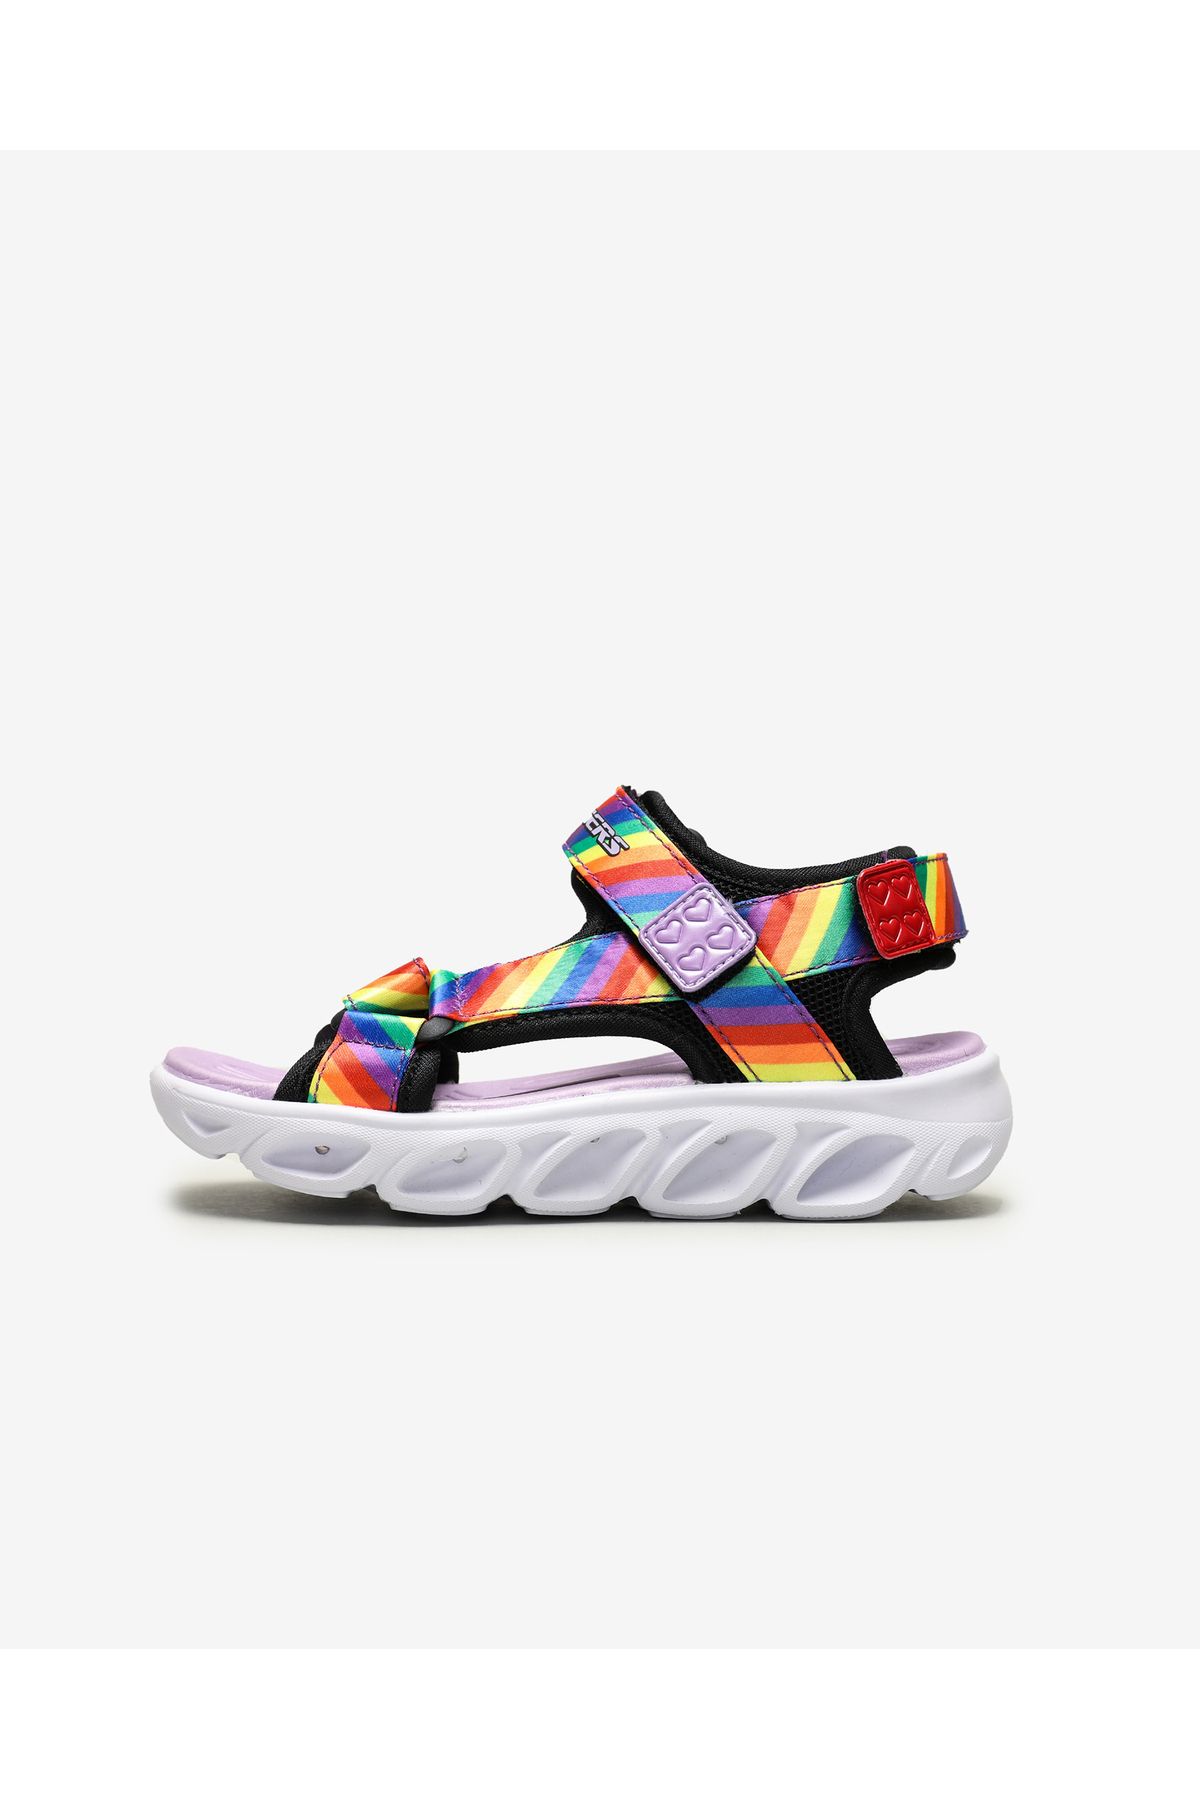 Skechers Hypno - Splash - Rainbow Lights Büyük Kız Çocuk Siyah Işıklı Sandalet 20218l Bkmt